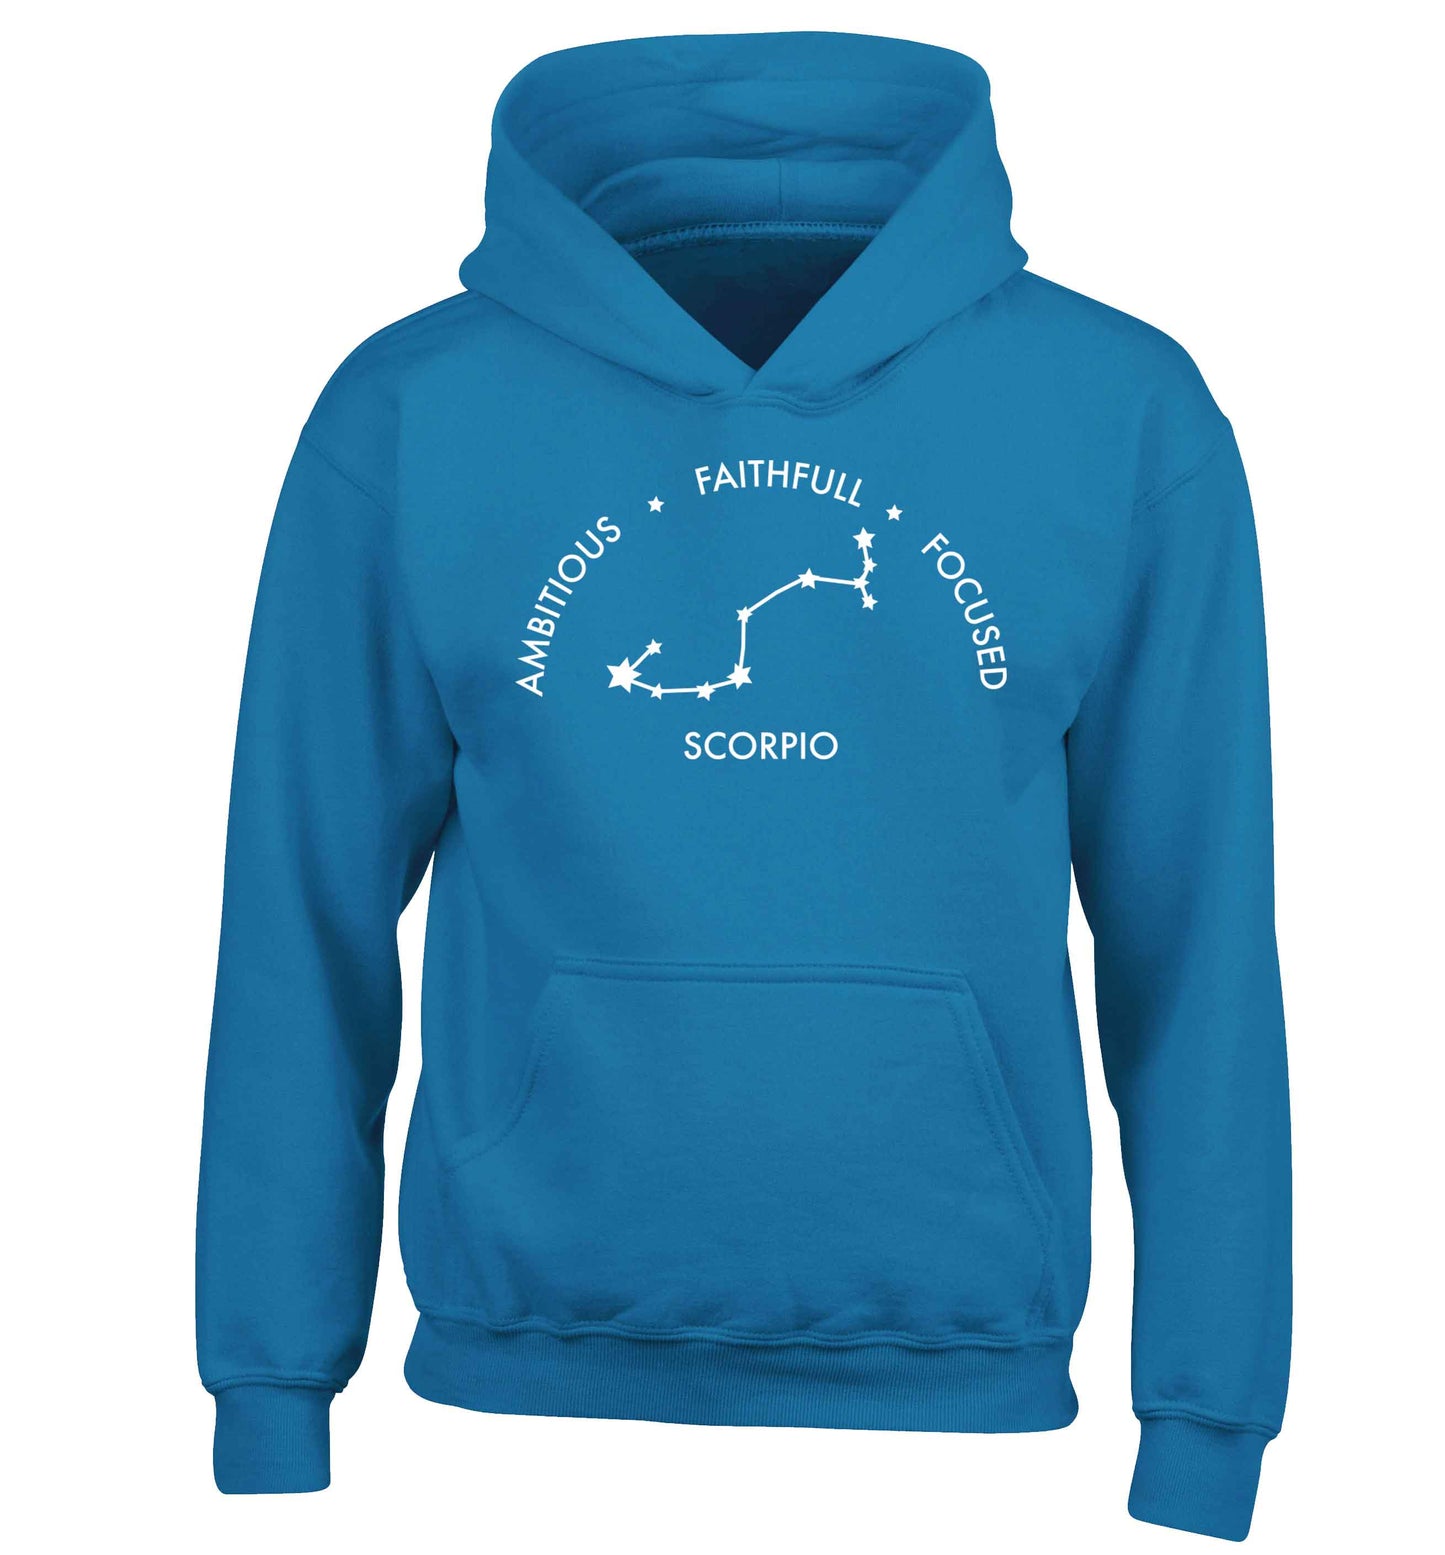 Scorpio, ambitious, faithfull, focused children's blue hoodie 12-13 Years